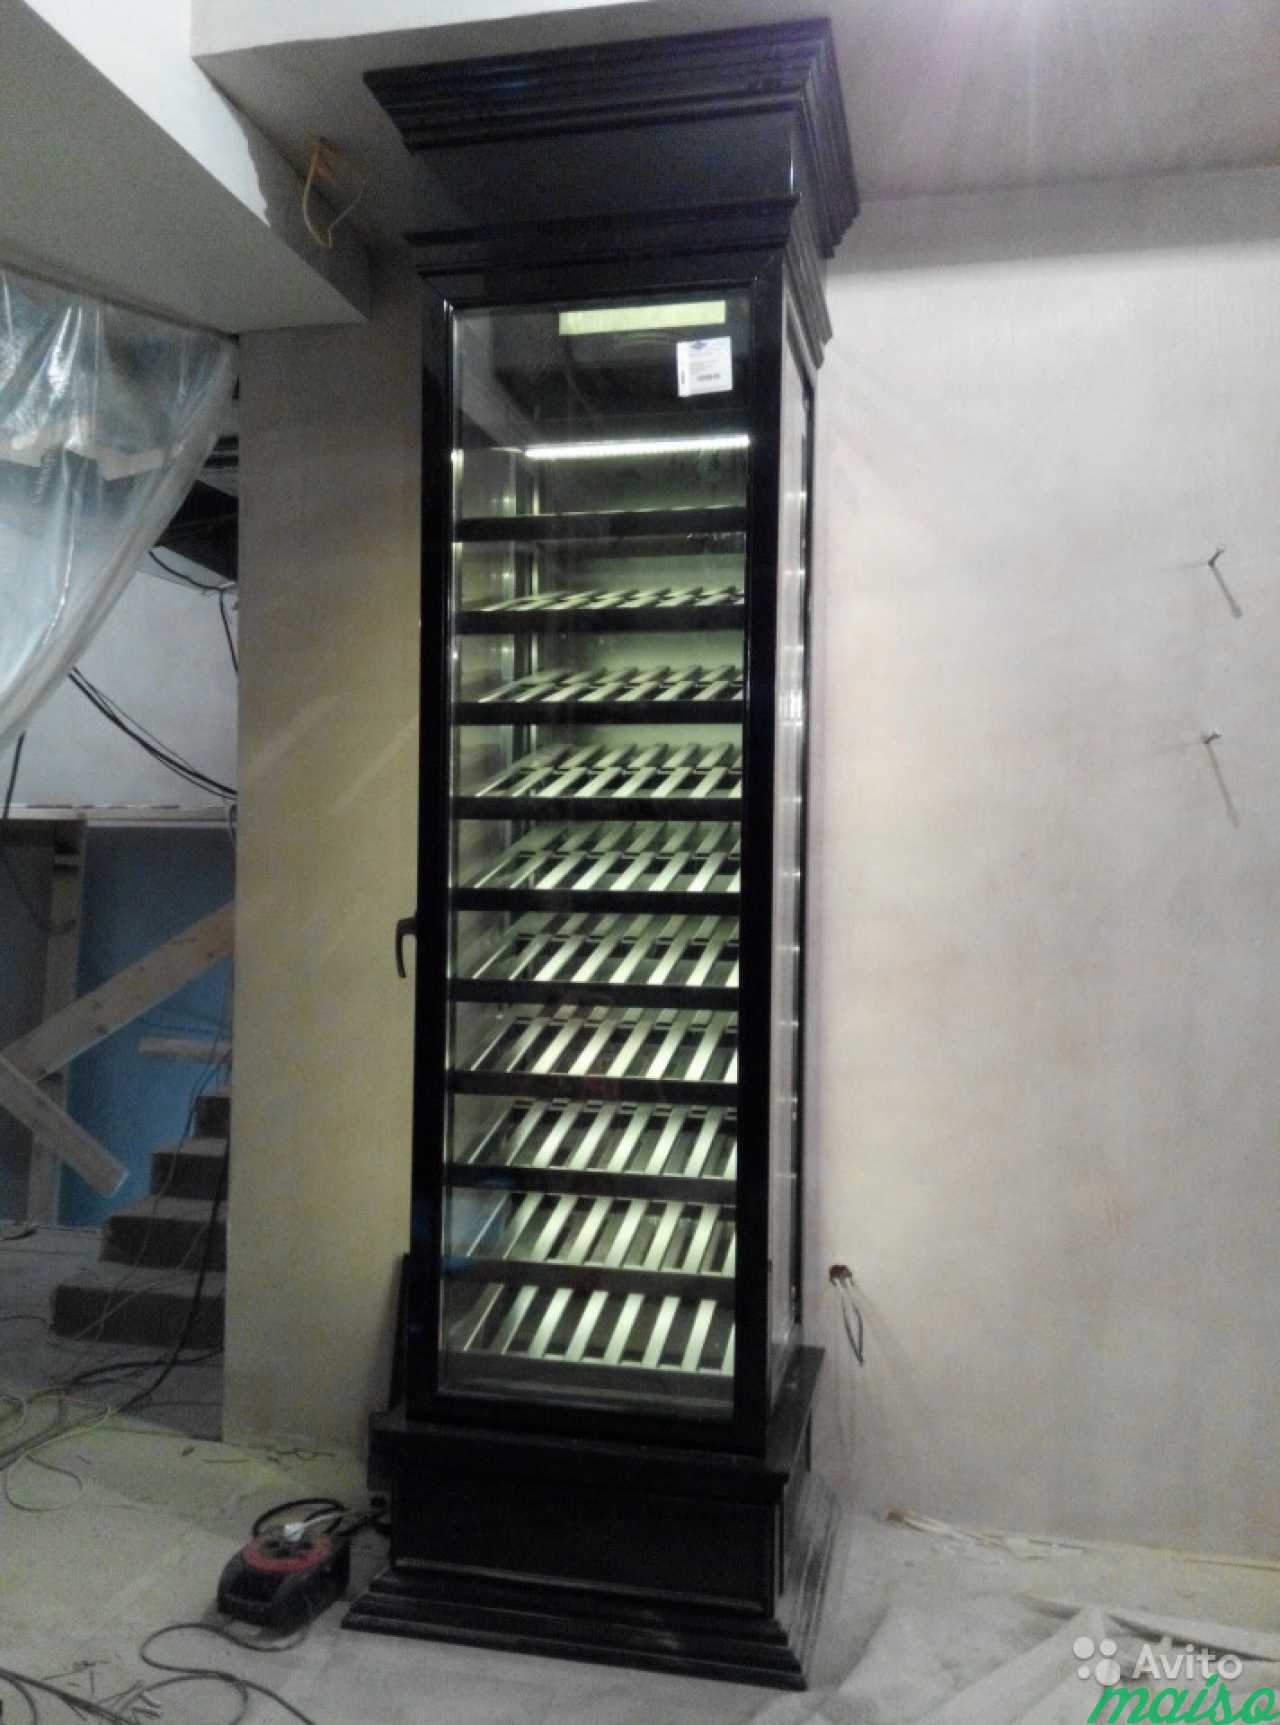 Ремонт холодильного оборудования в Москве. Фото 4